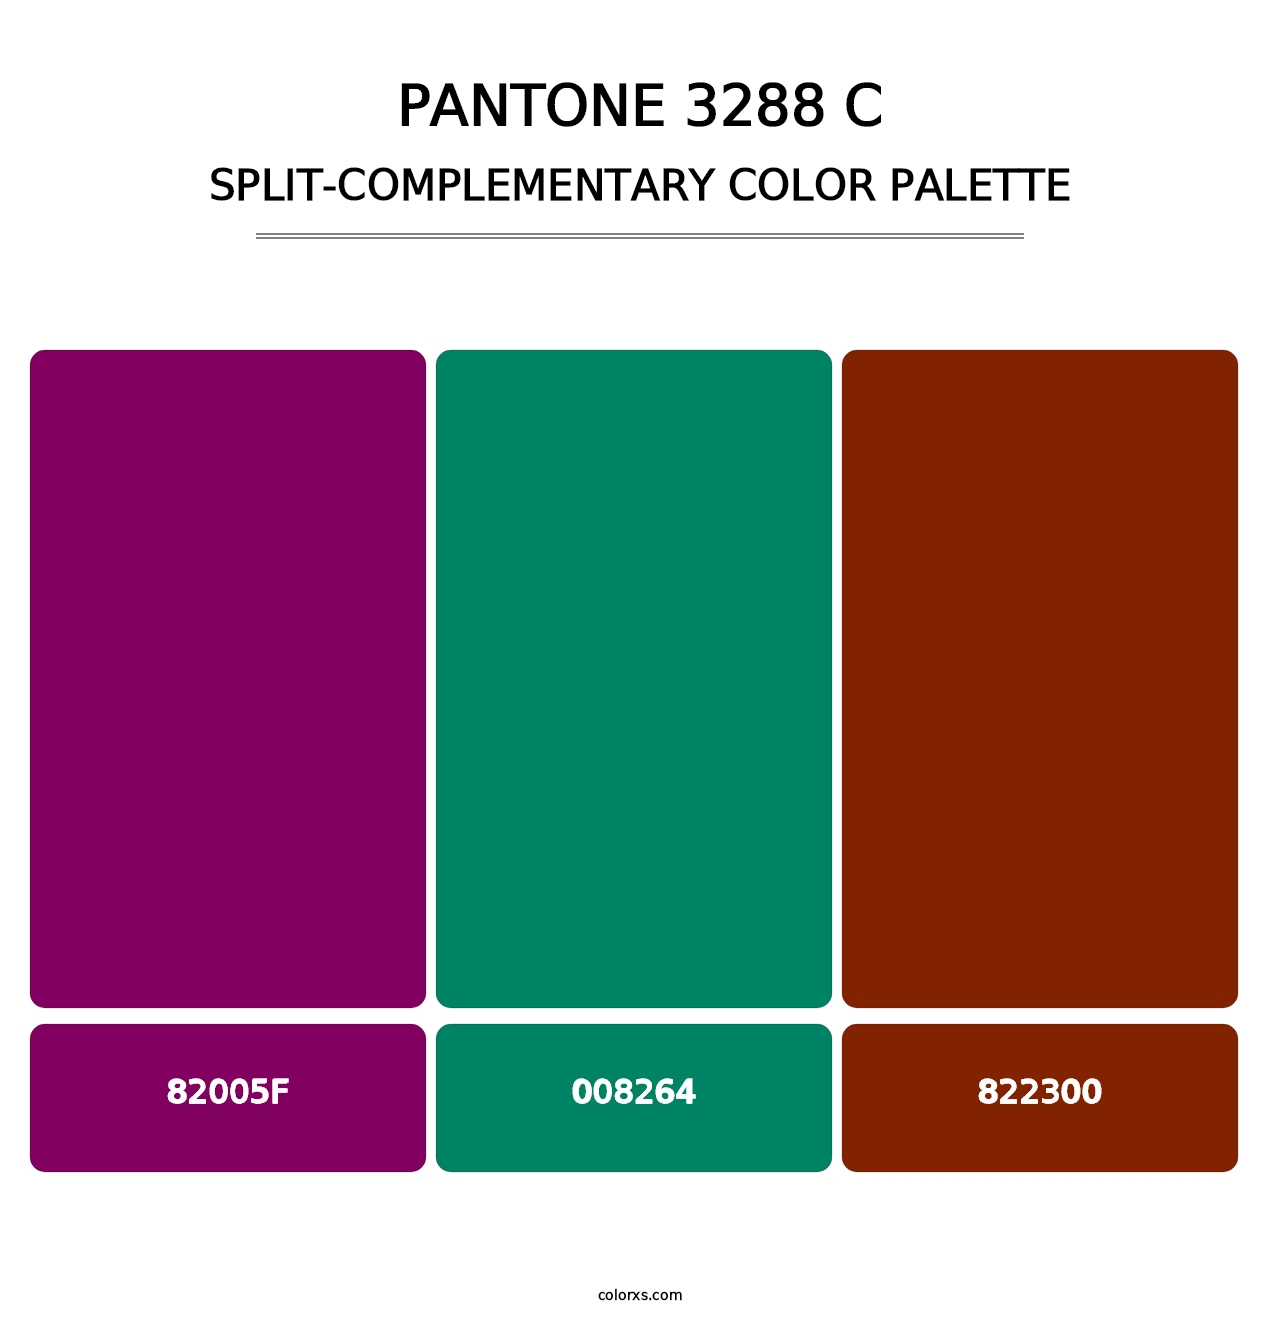 PANTONE 3288 C - Split-Complementary Color Palette